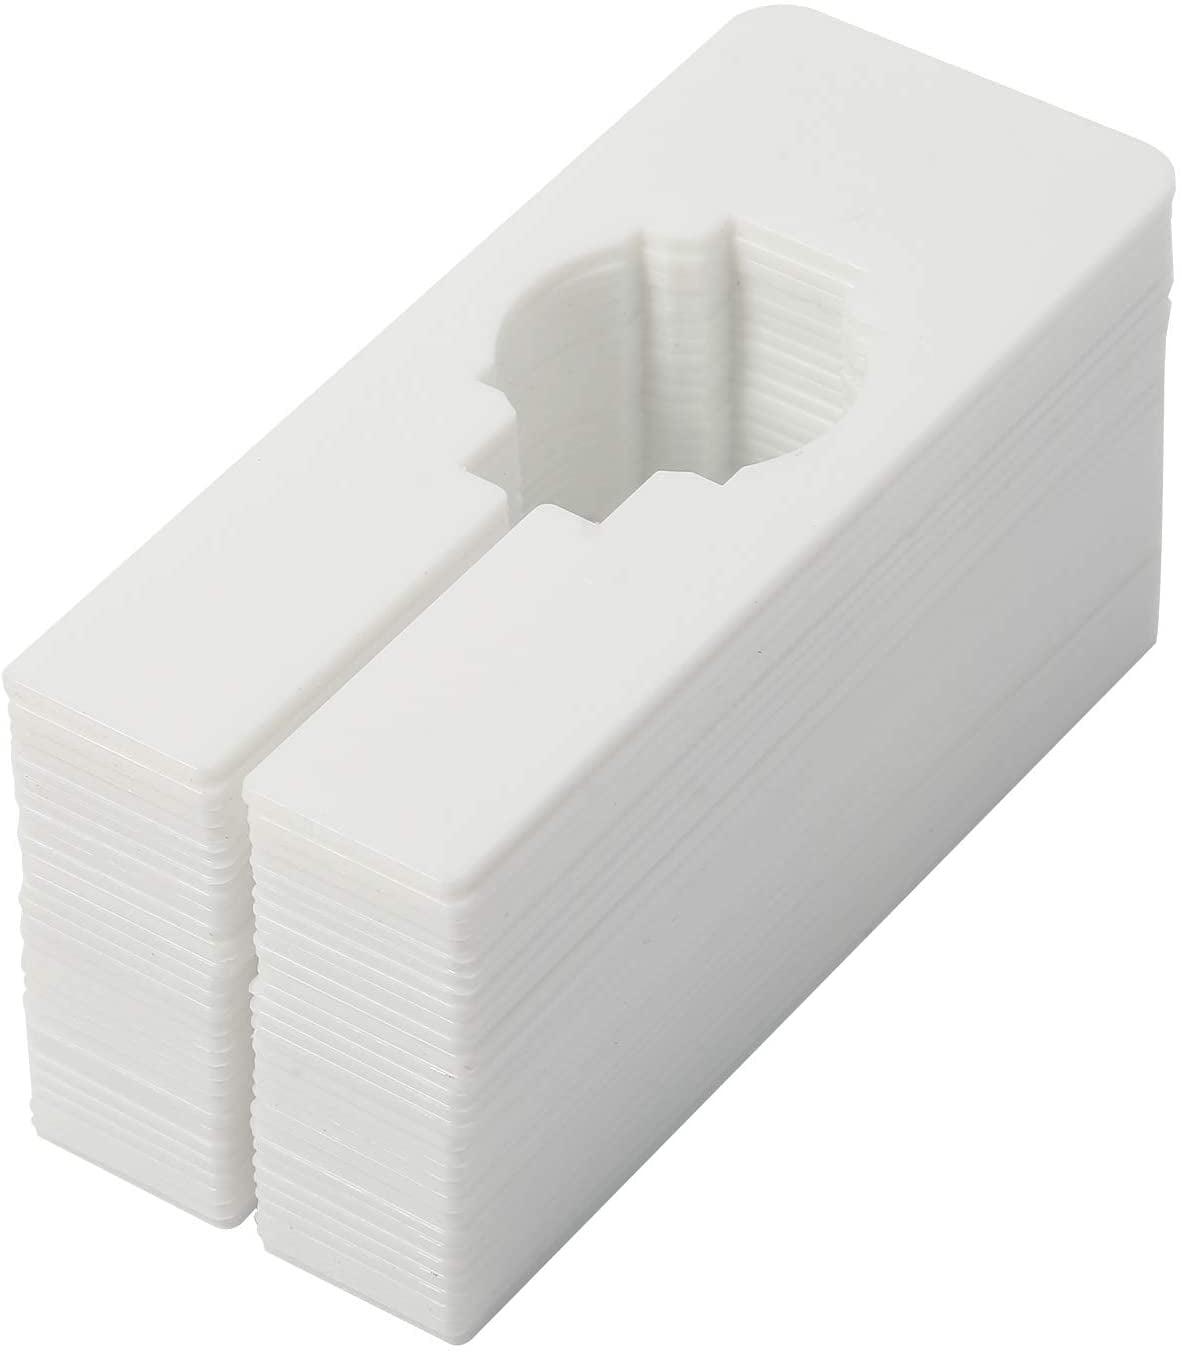 White Plastic 80 Blank Rectangular Size Dividers for Retail Clothing Racks 